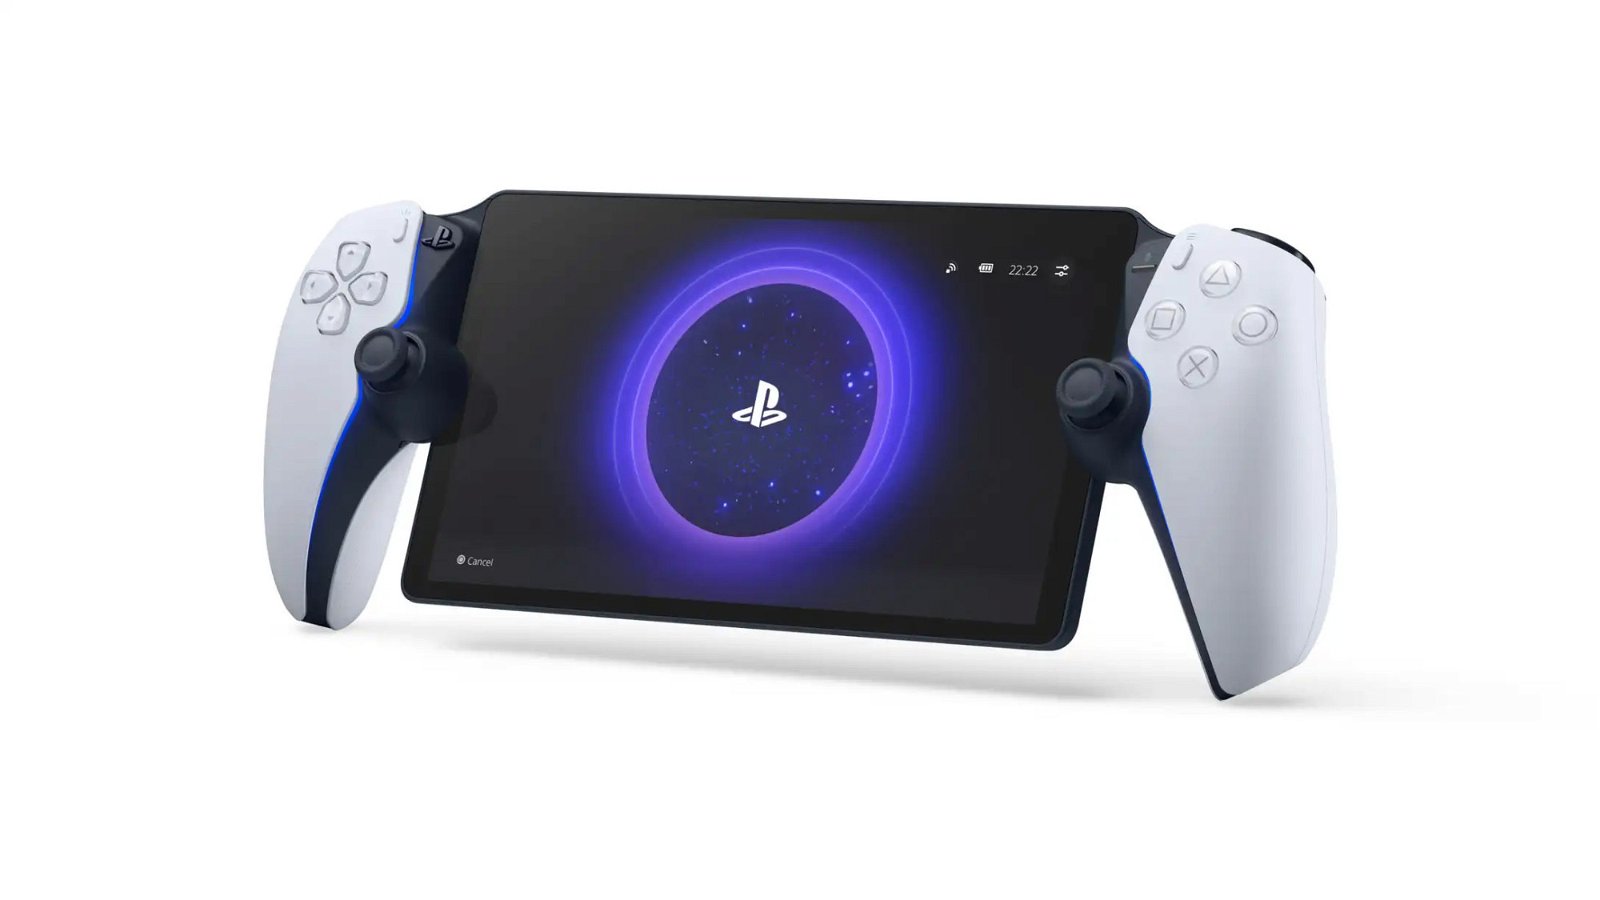 PlayStation Portal non è stata progettata per ottenere profitti, afferma Sony